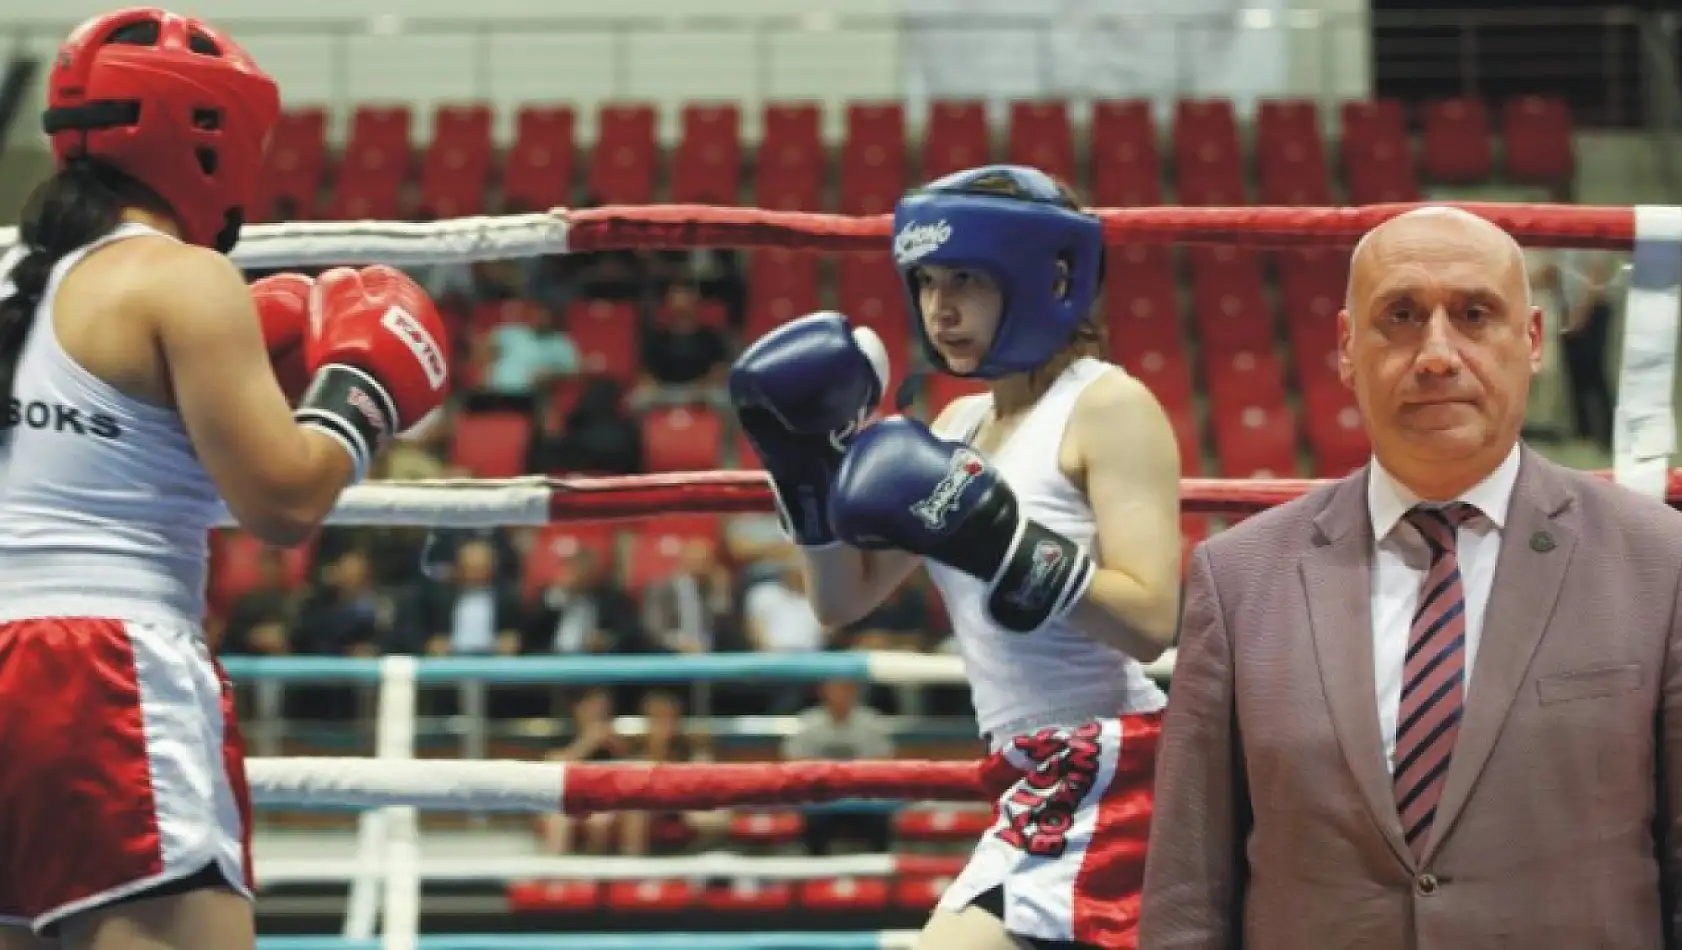 Konya'da 8 bin kick boksçu milli olabilmek için dövüşüyor